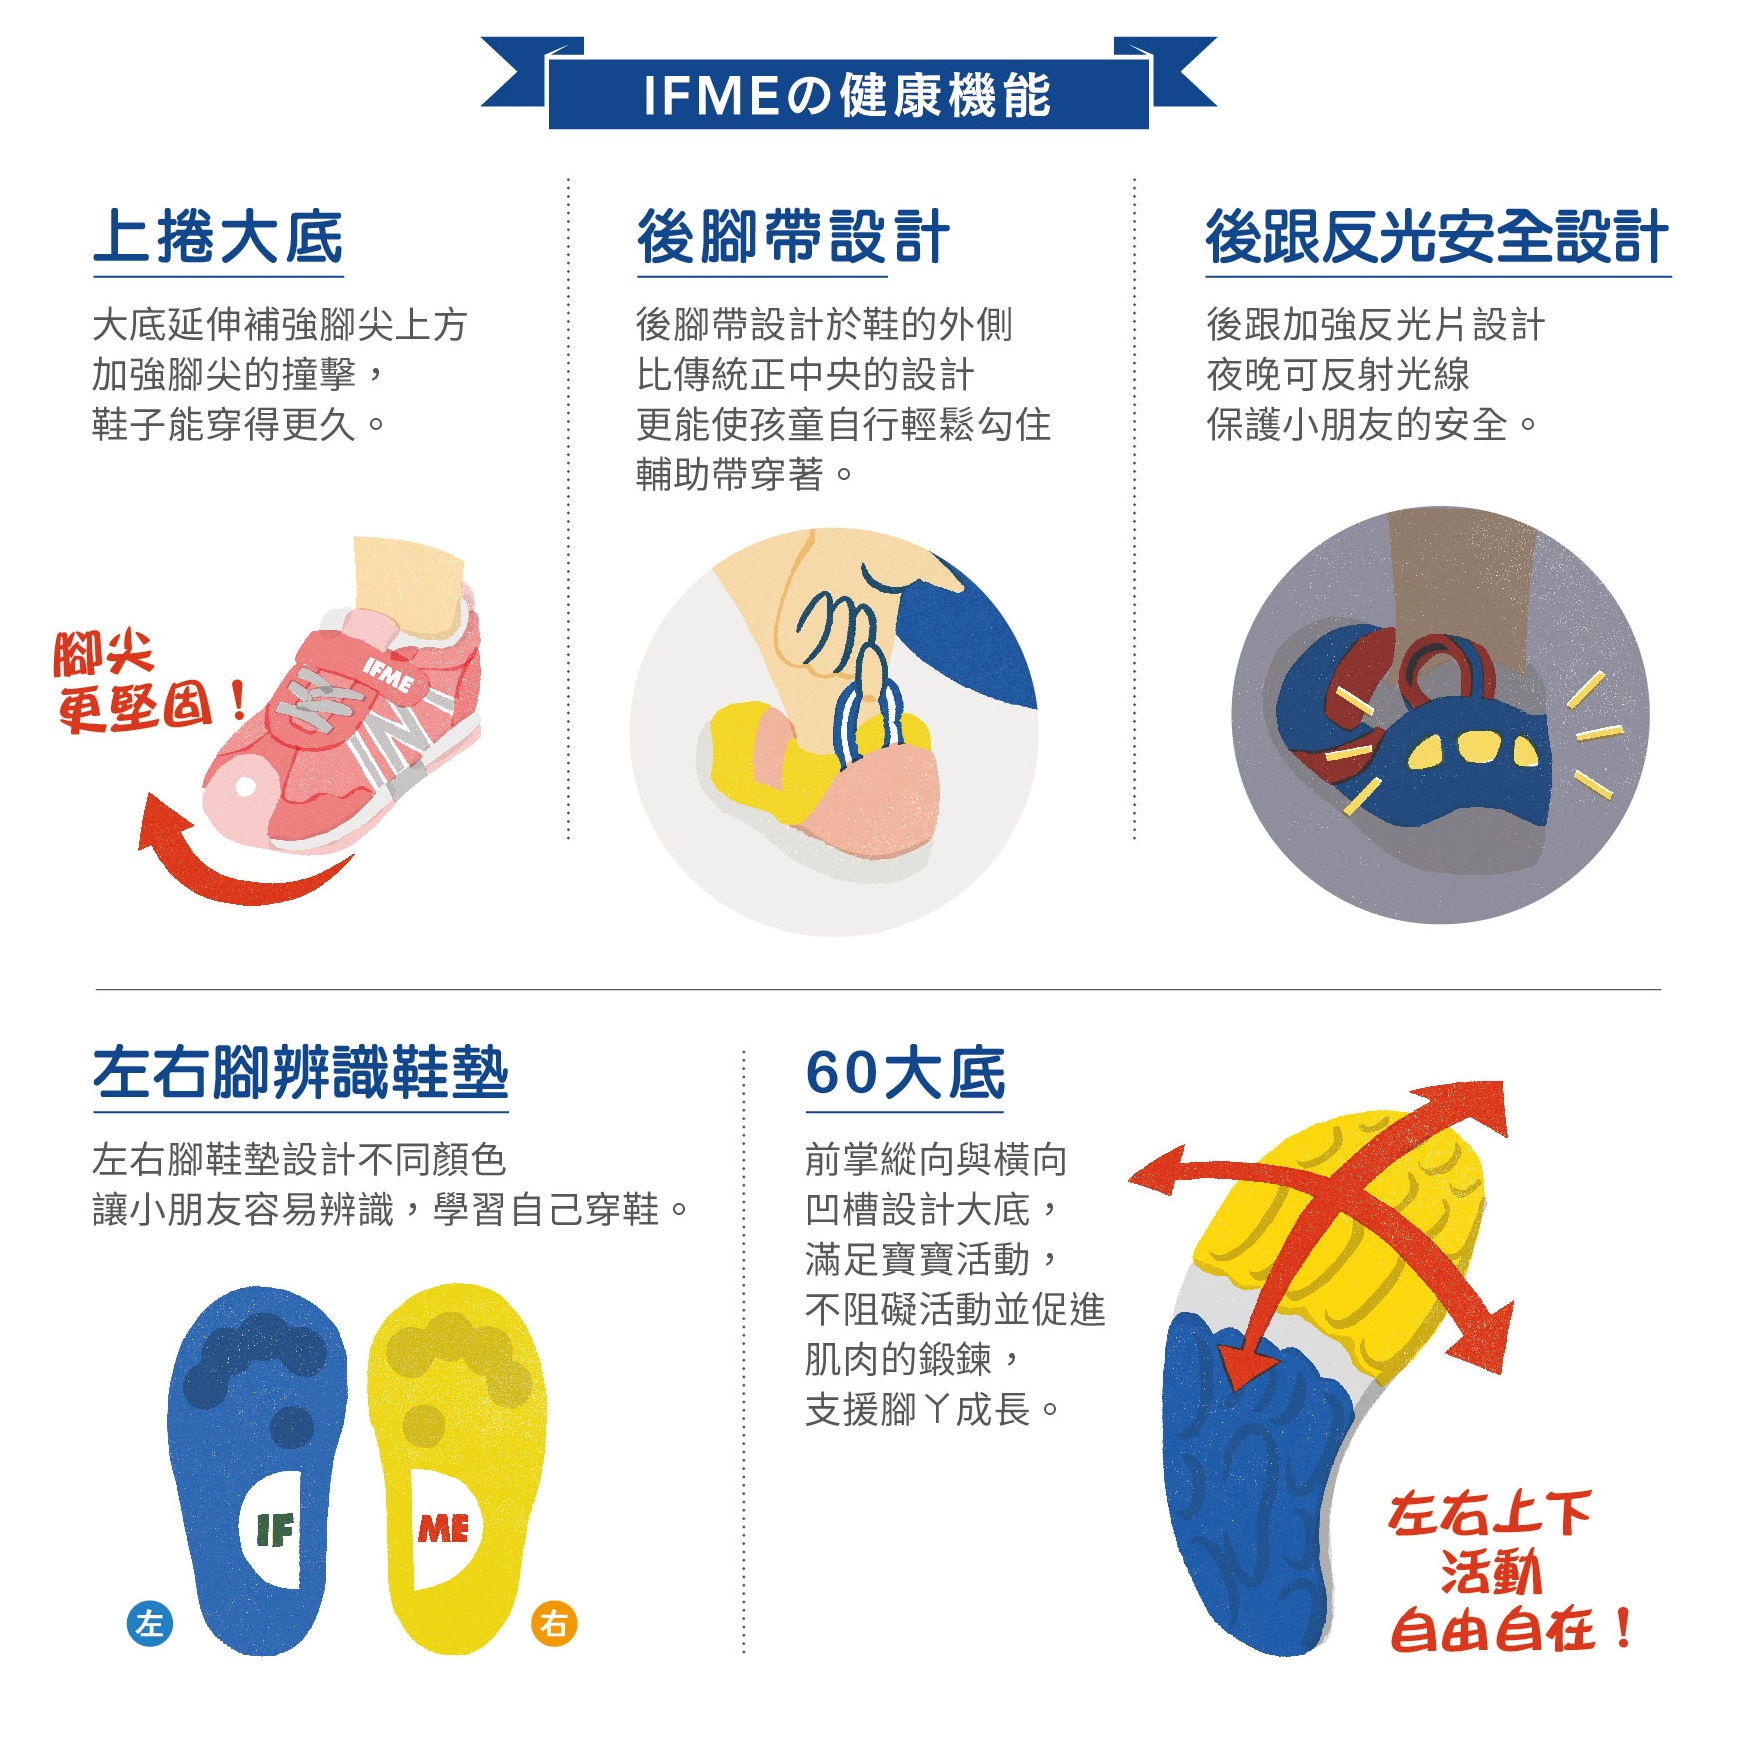 IFME的健康機能，後腳帶設計後腳帶設計於鞋的外側反光安全設計，孩童自行輕鬆勾住輔助帶穿著。左右腳辨識鞋墊